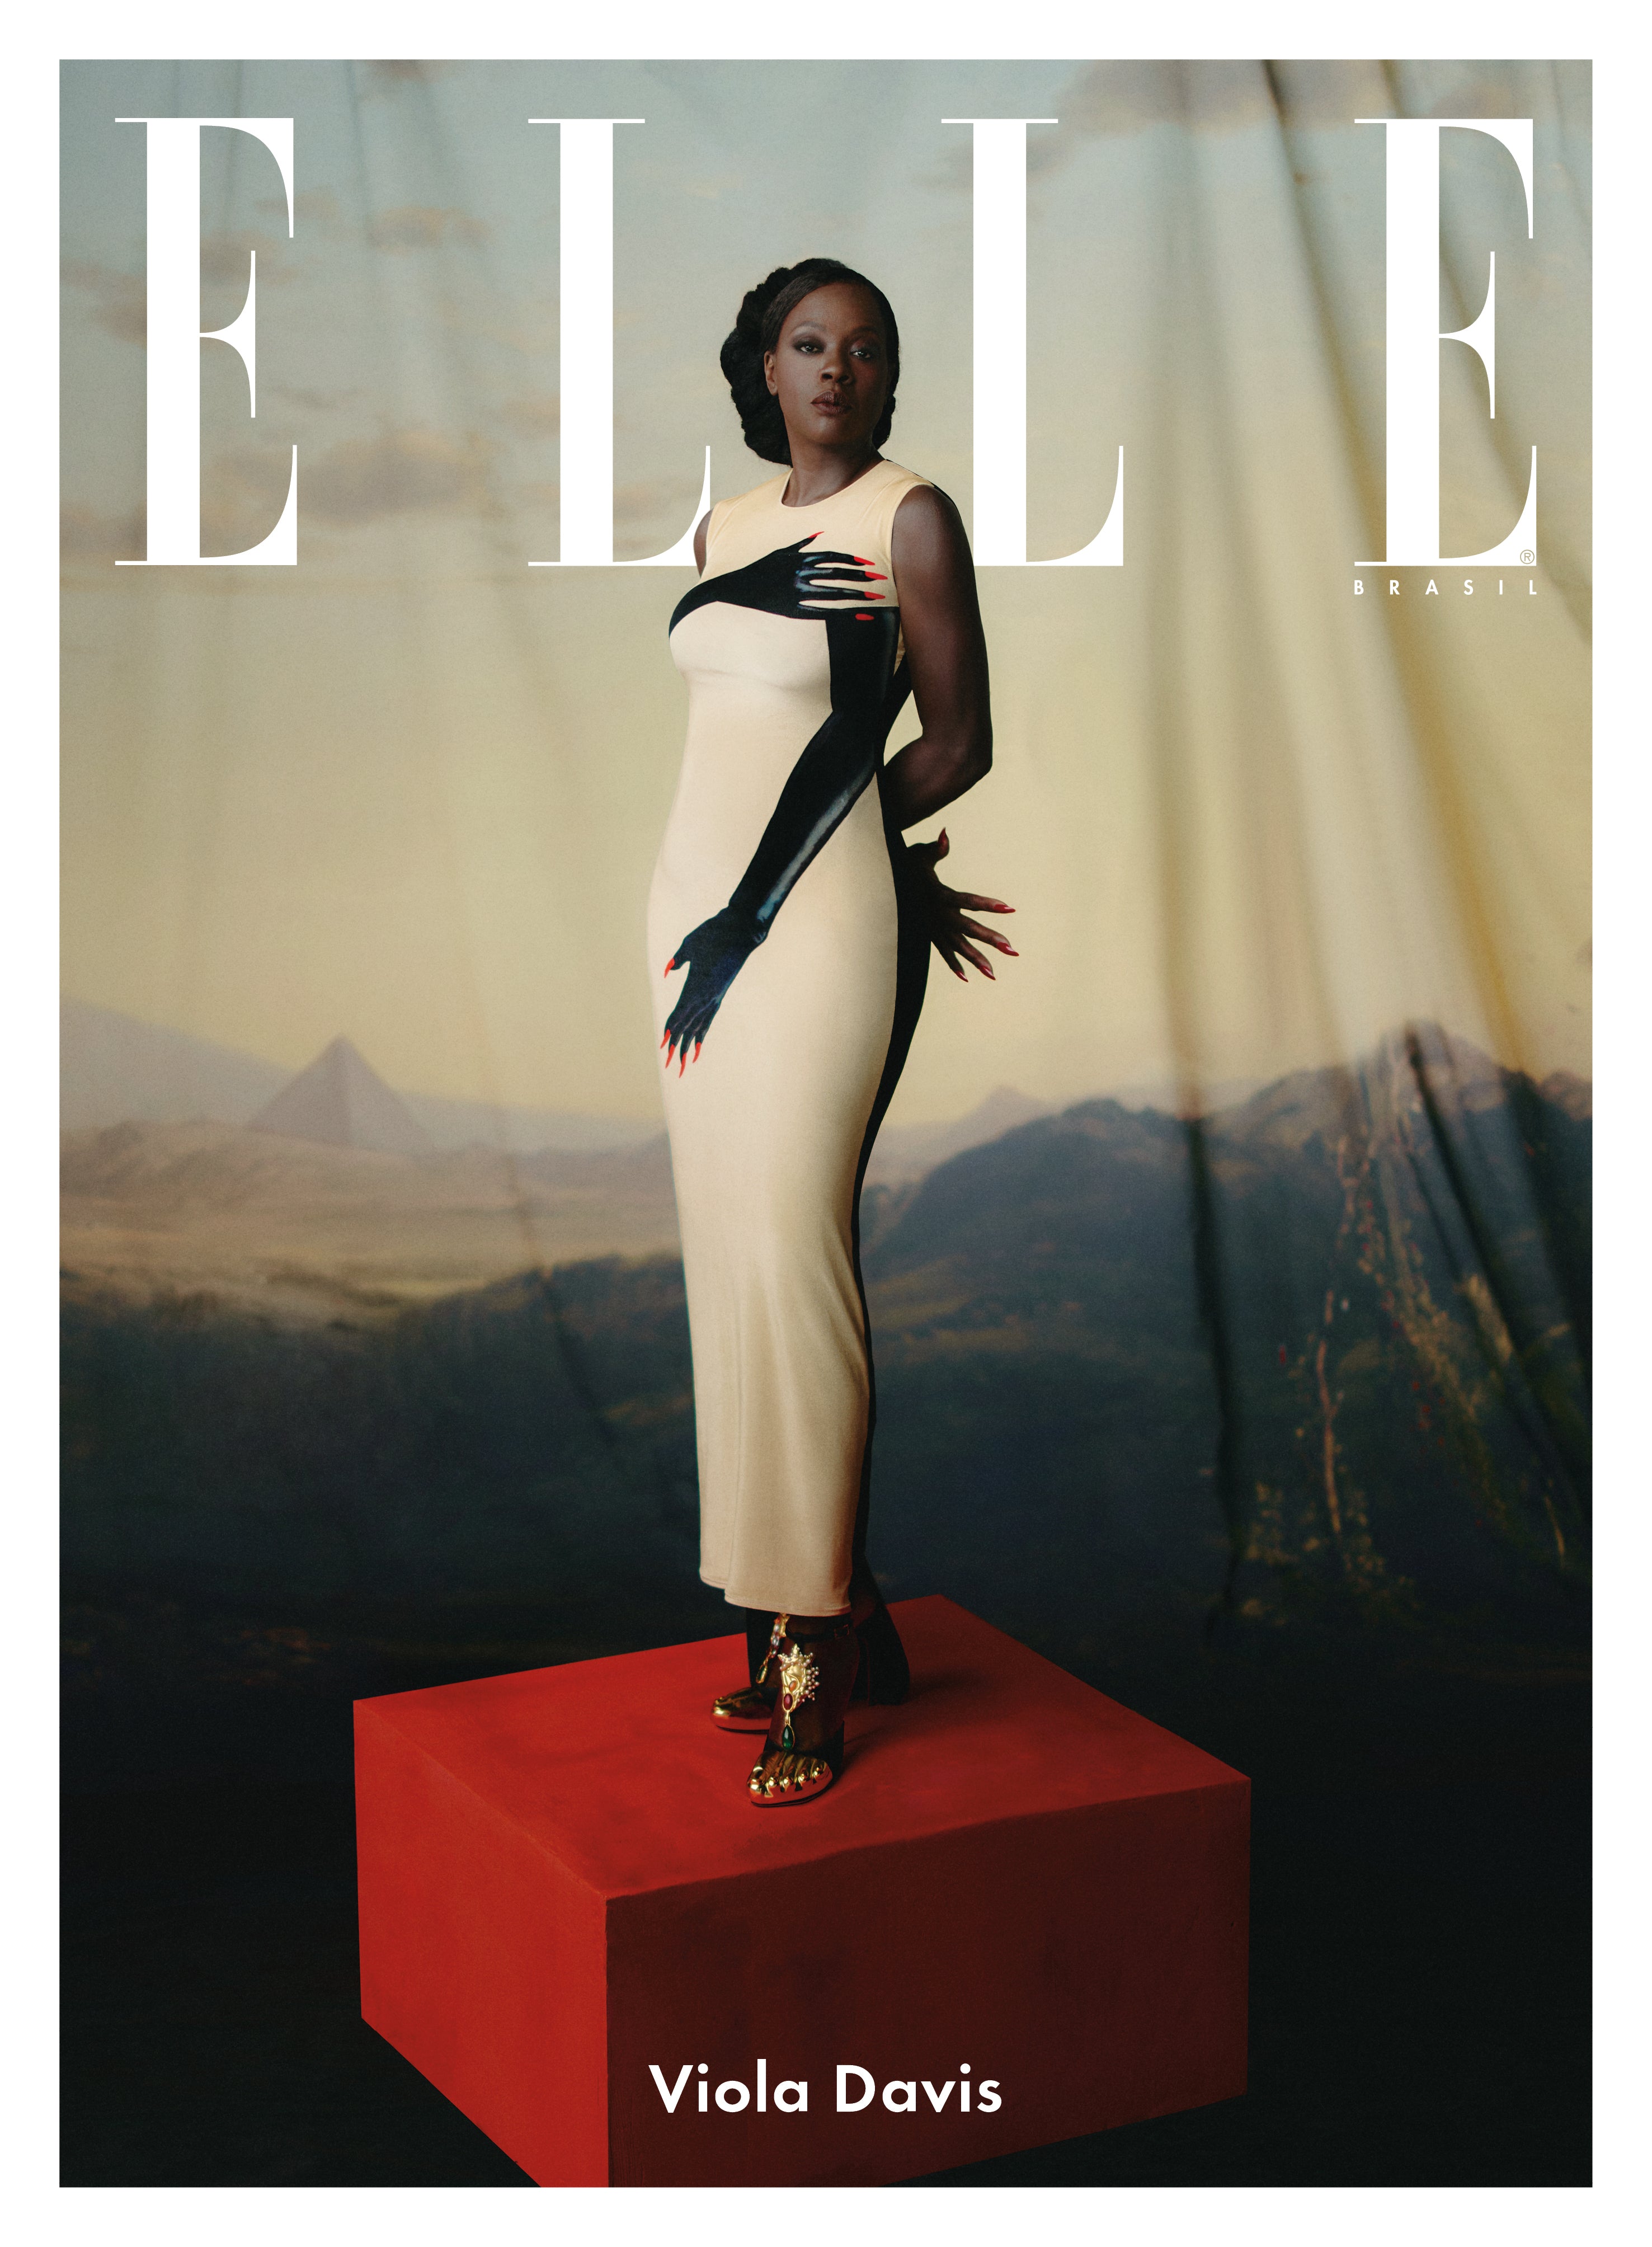 Elle Brasil lança edição com cinco capas diferentes